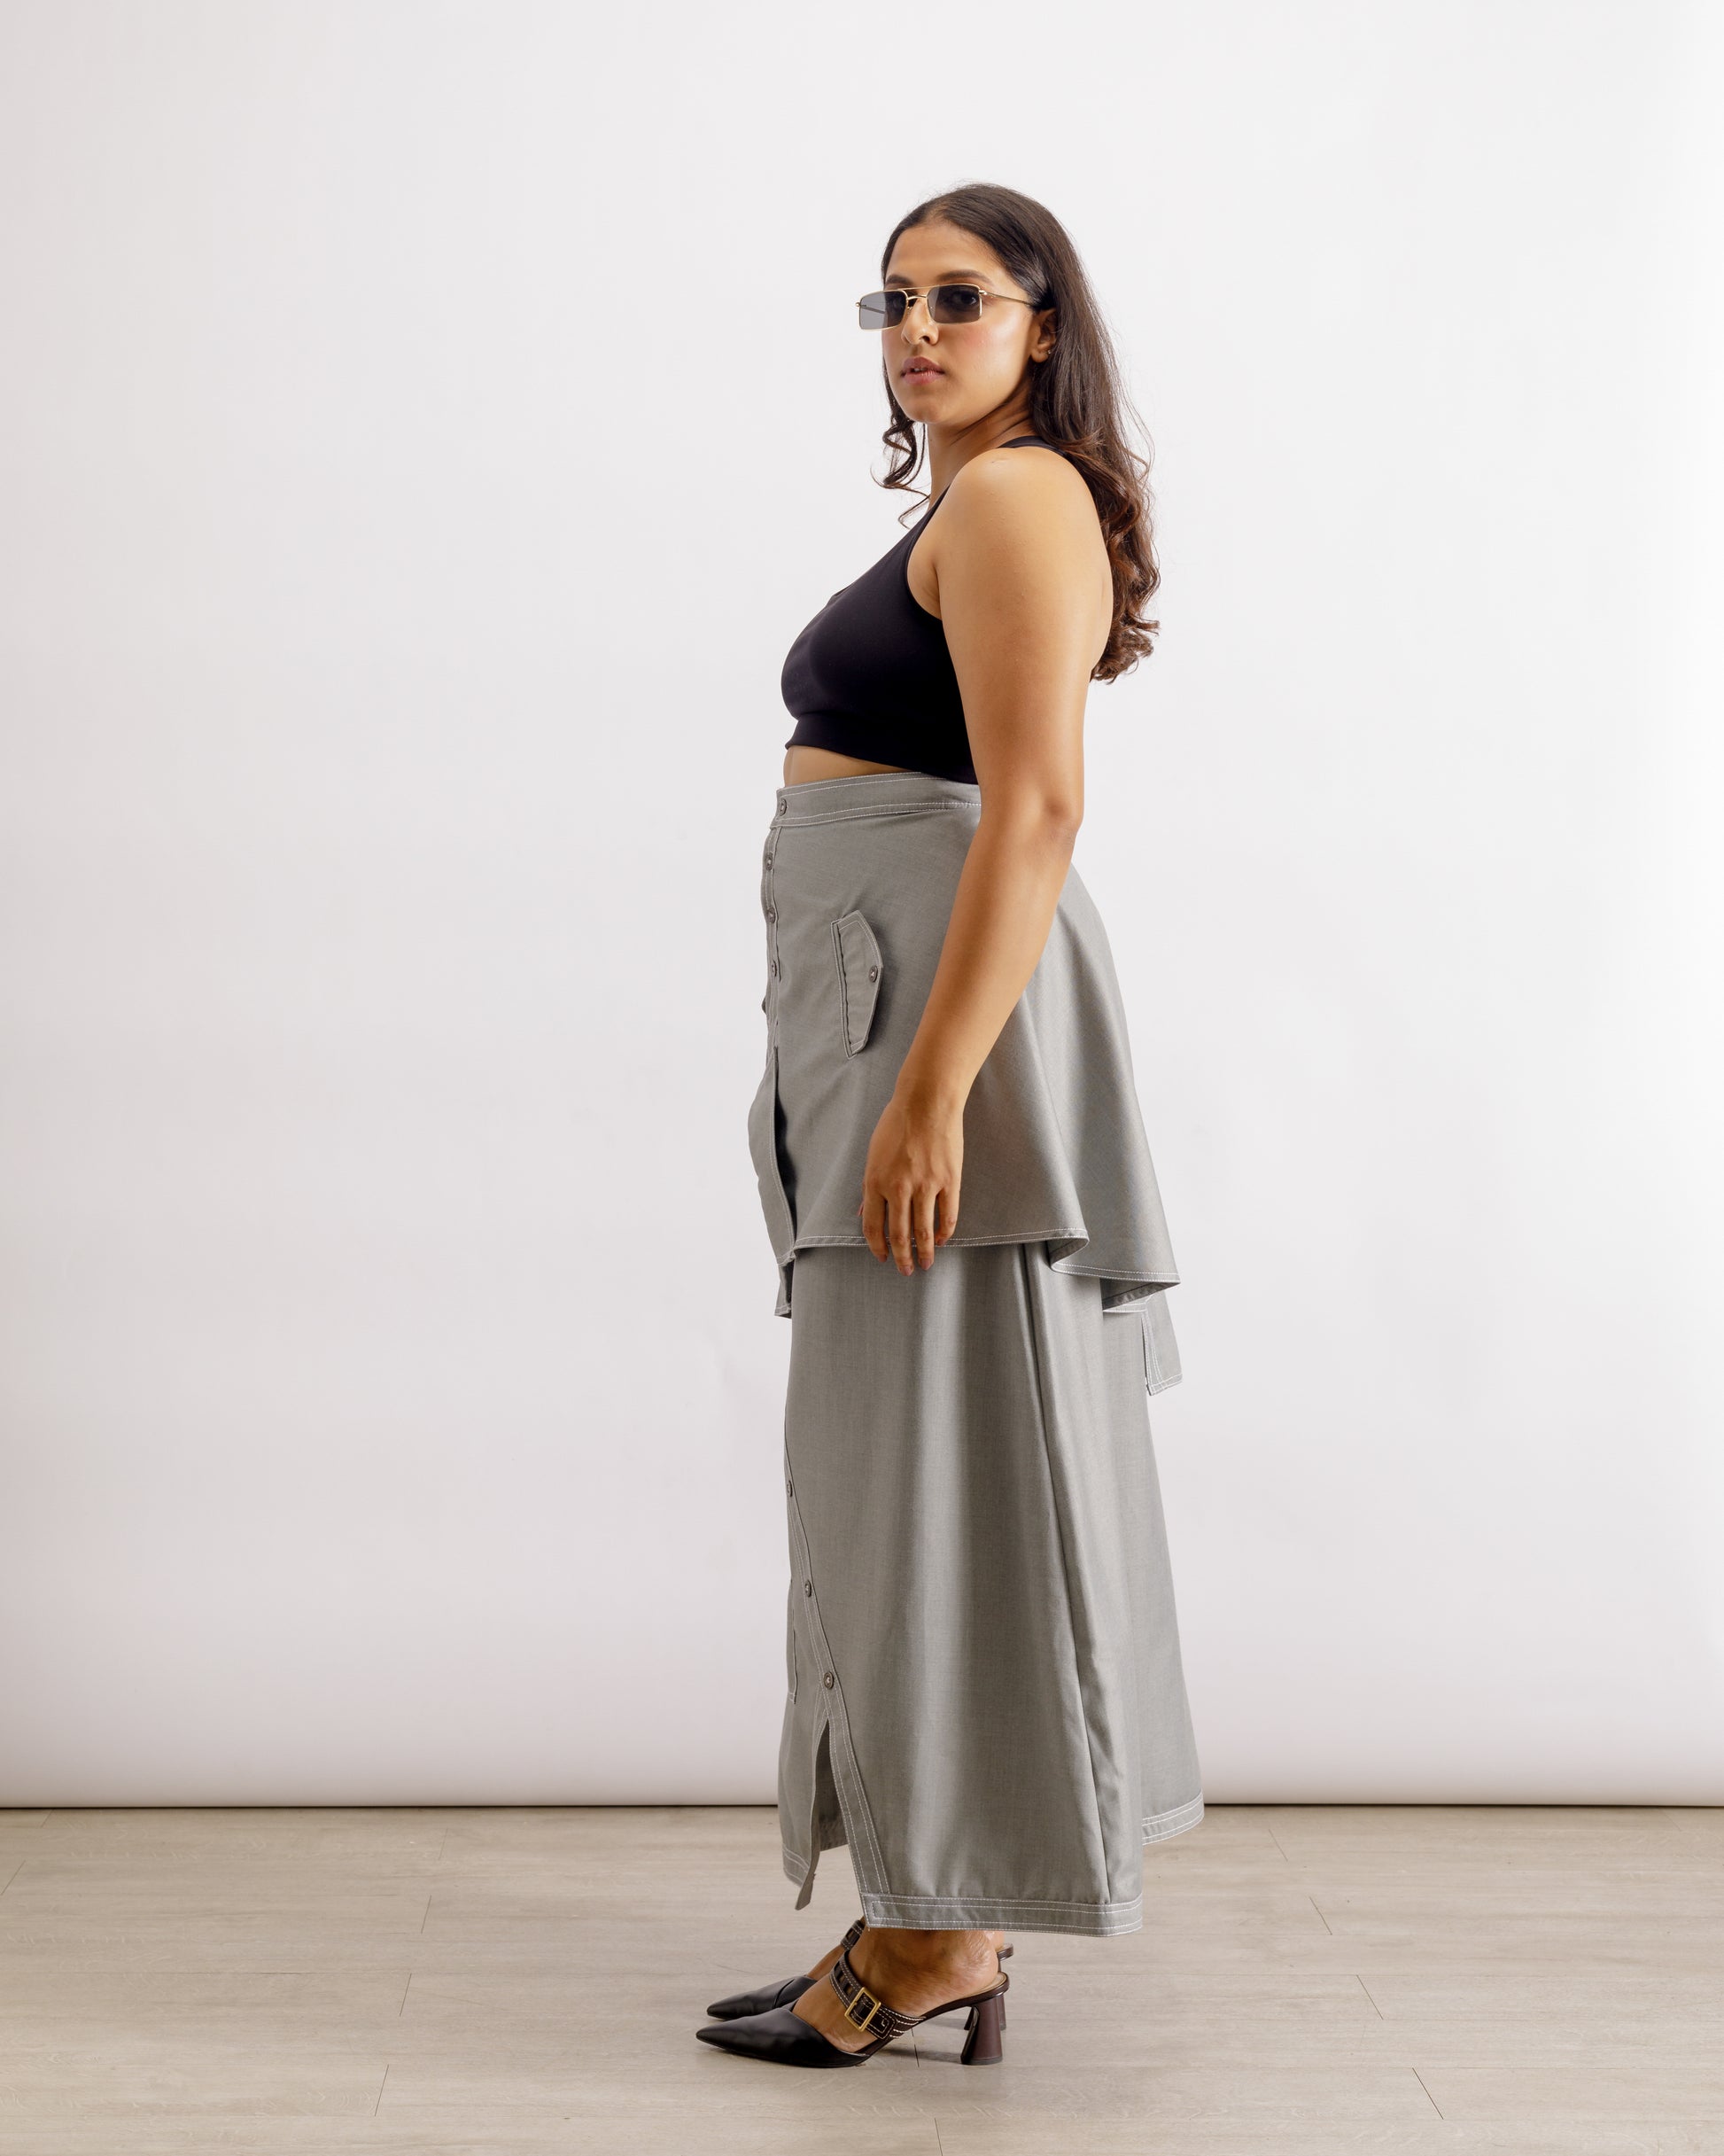 Designer Skirts for Women | Heeroh Masterji Skirt | PAIVE